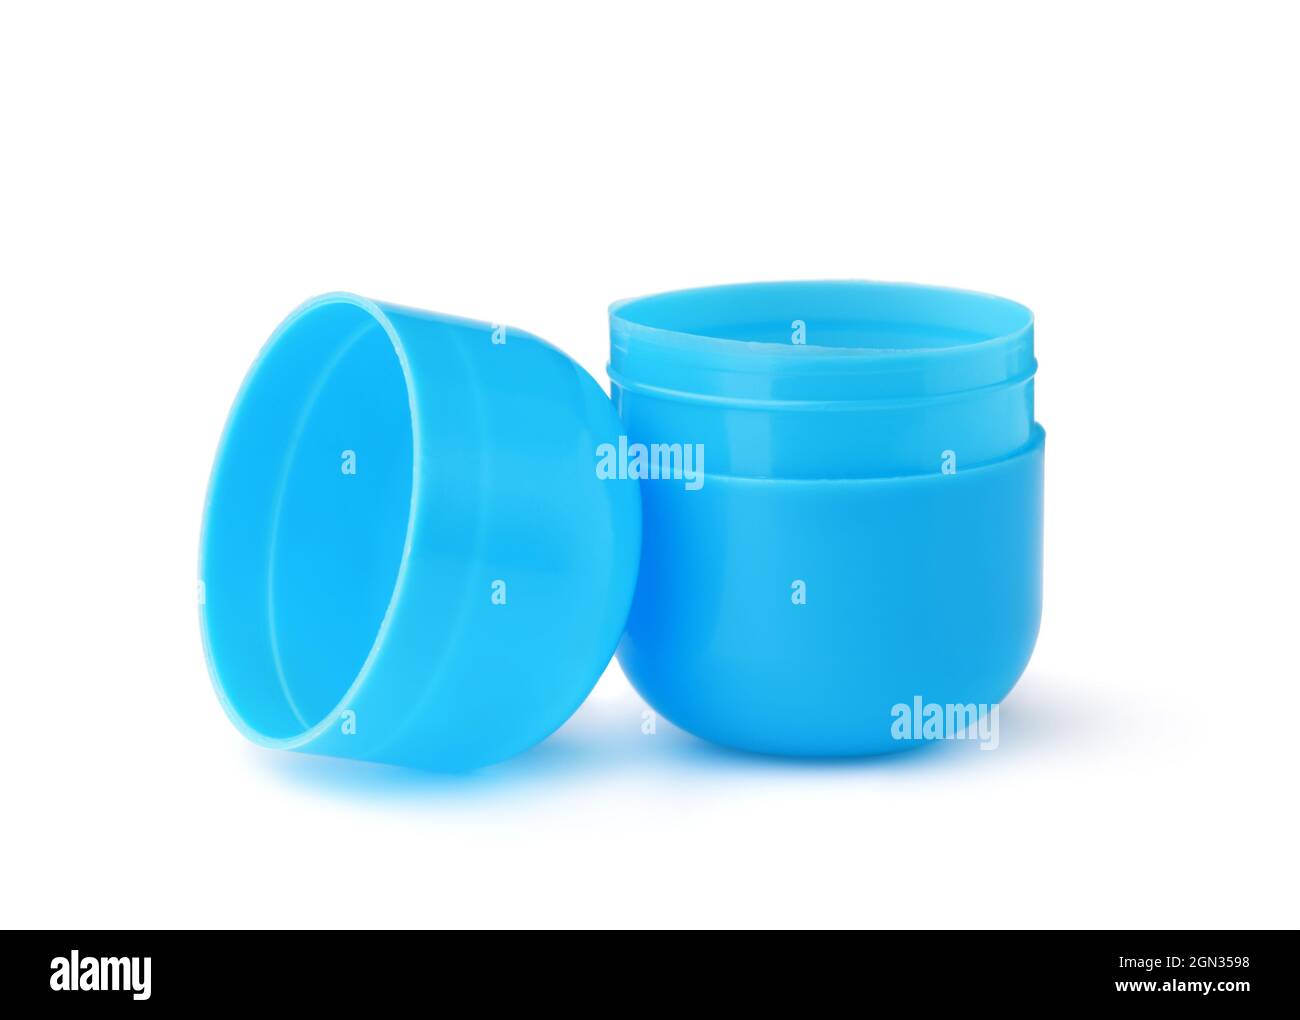 Offenes blaues Spielzeug-Ei aus Kunststoff, isoliert auf Weiß Stockfoto